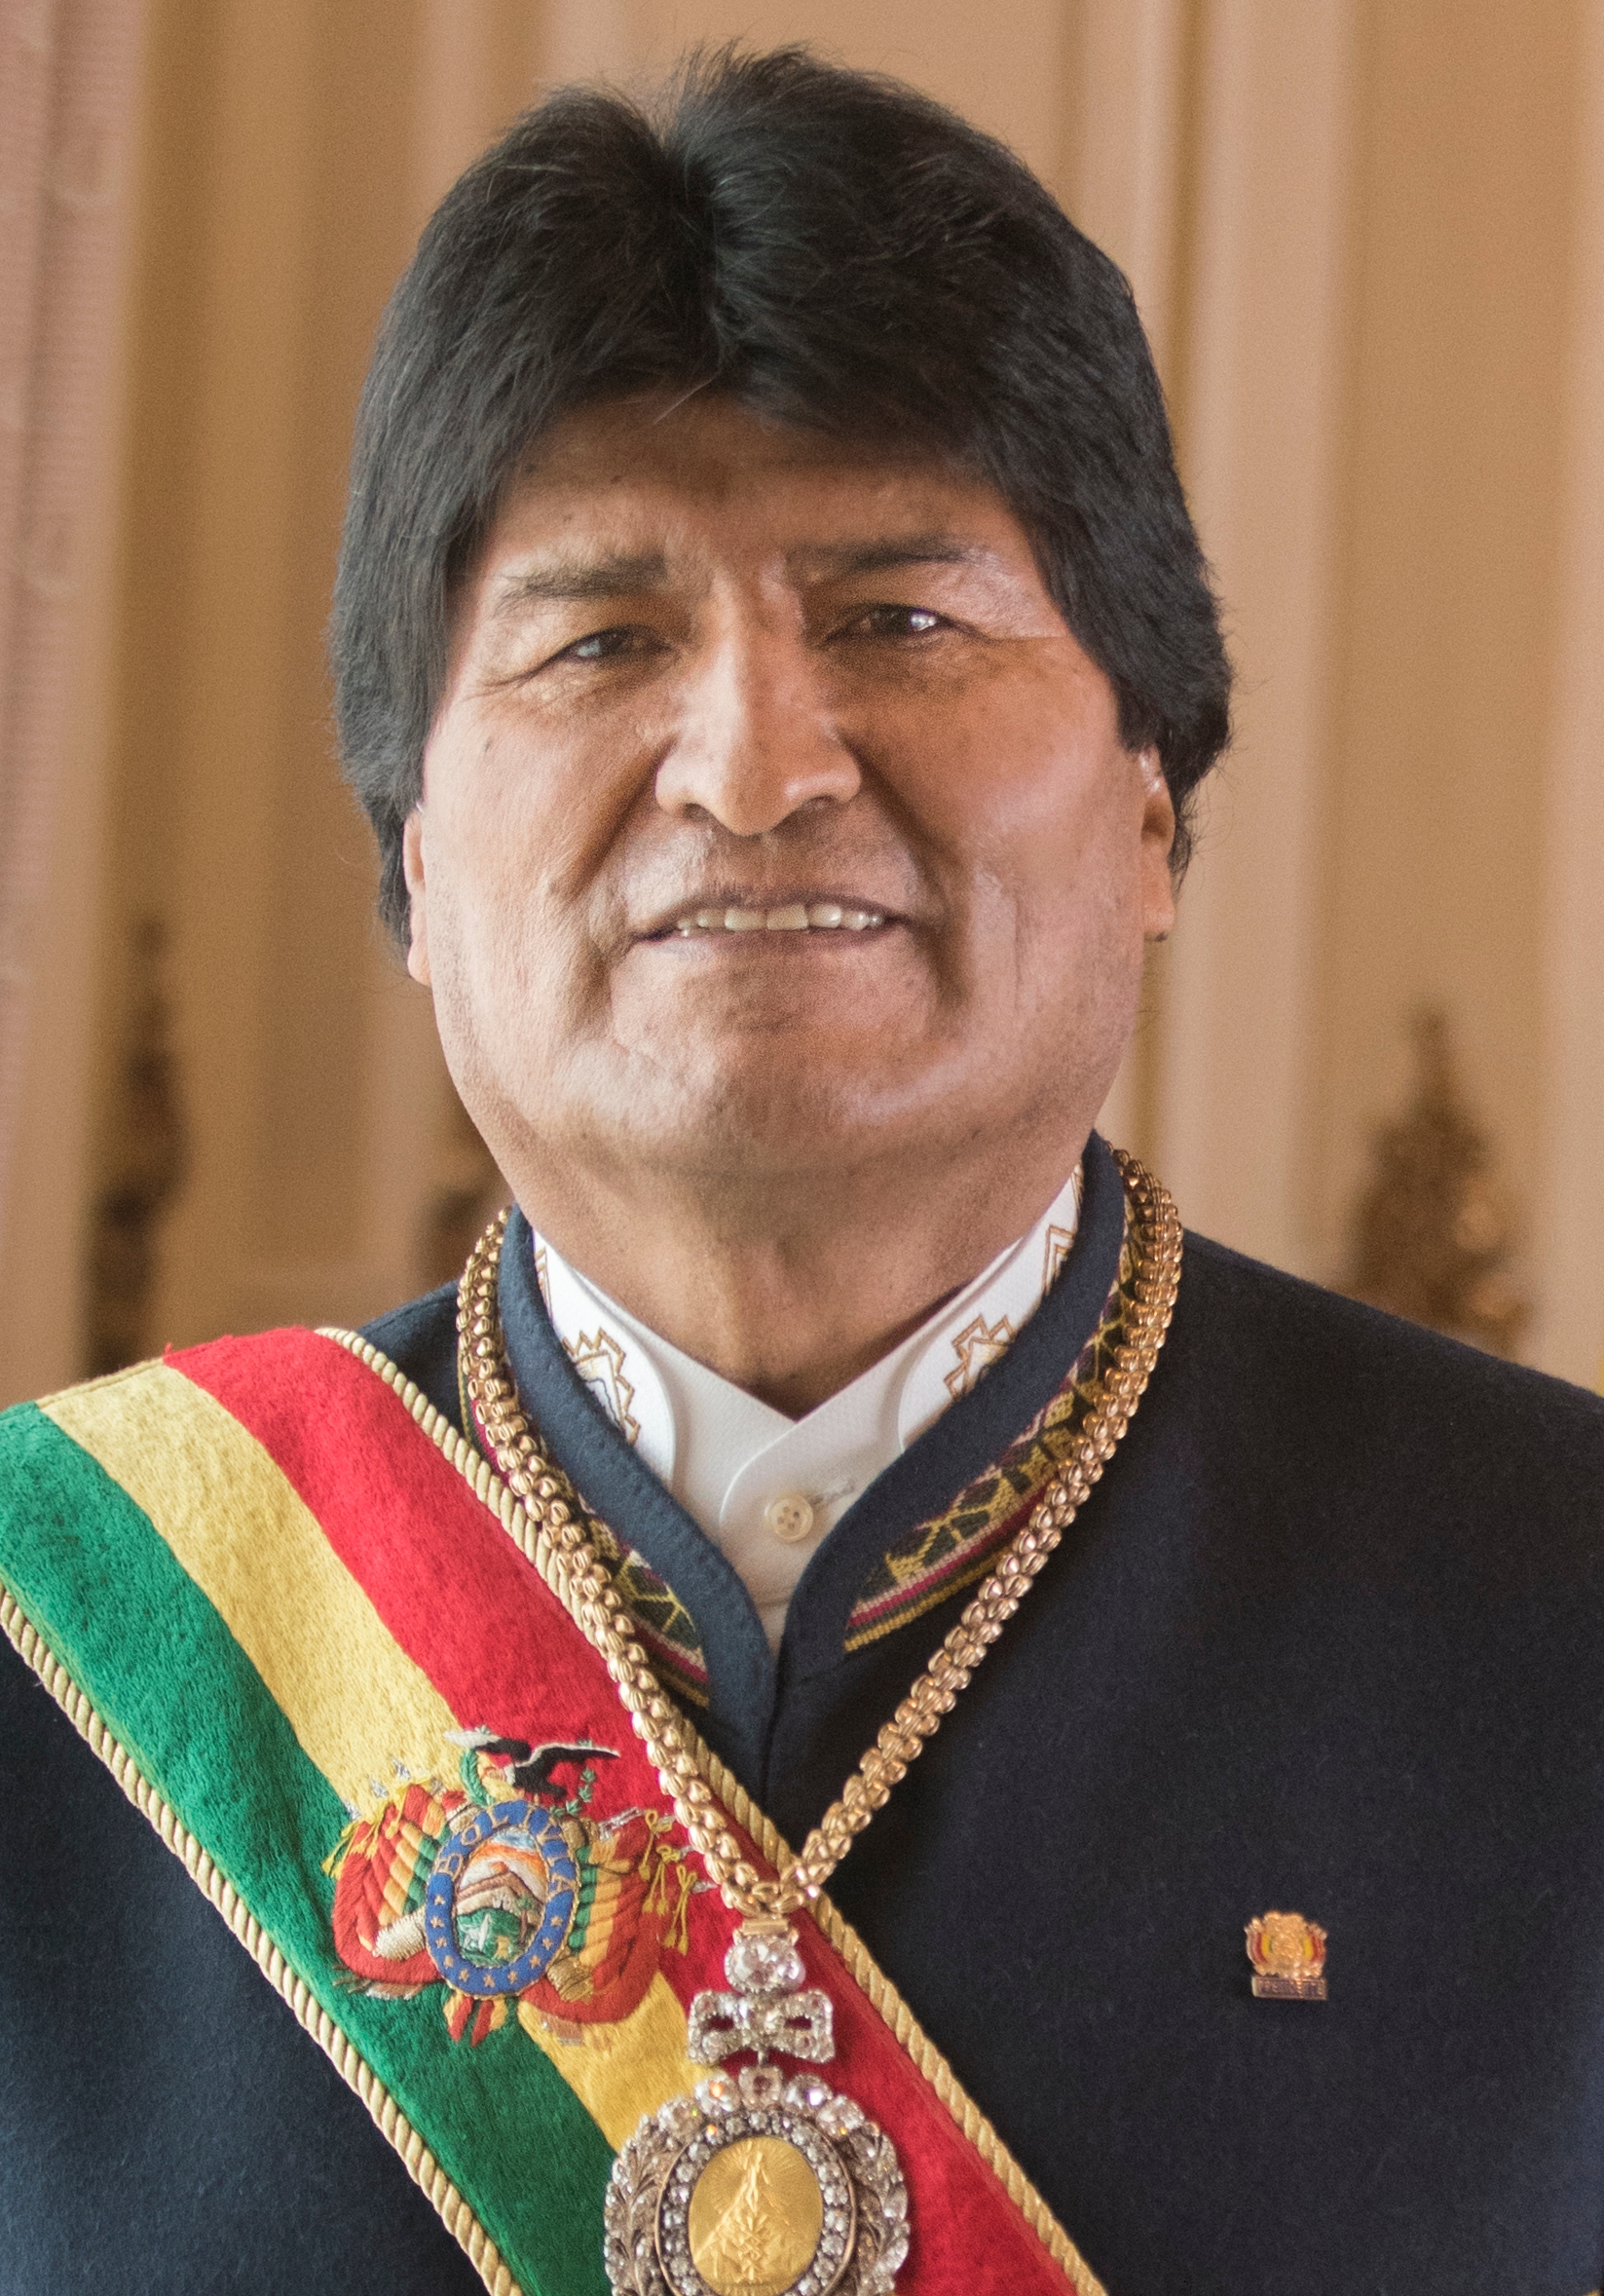 auteur Evo Morales de la citation Il n'y avait pas de propriété privée dans le passé. Tout était une propriété communautaire. Dans la communauté indienne où je suis né, tout appartenait à la communauté. Ce mode de vie est plus équitable.